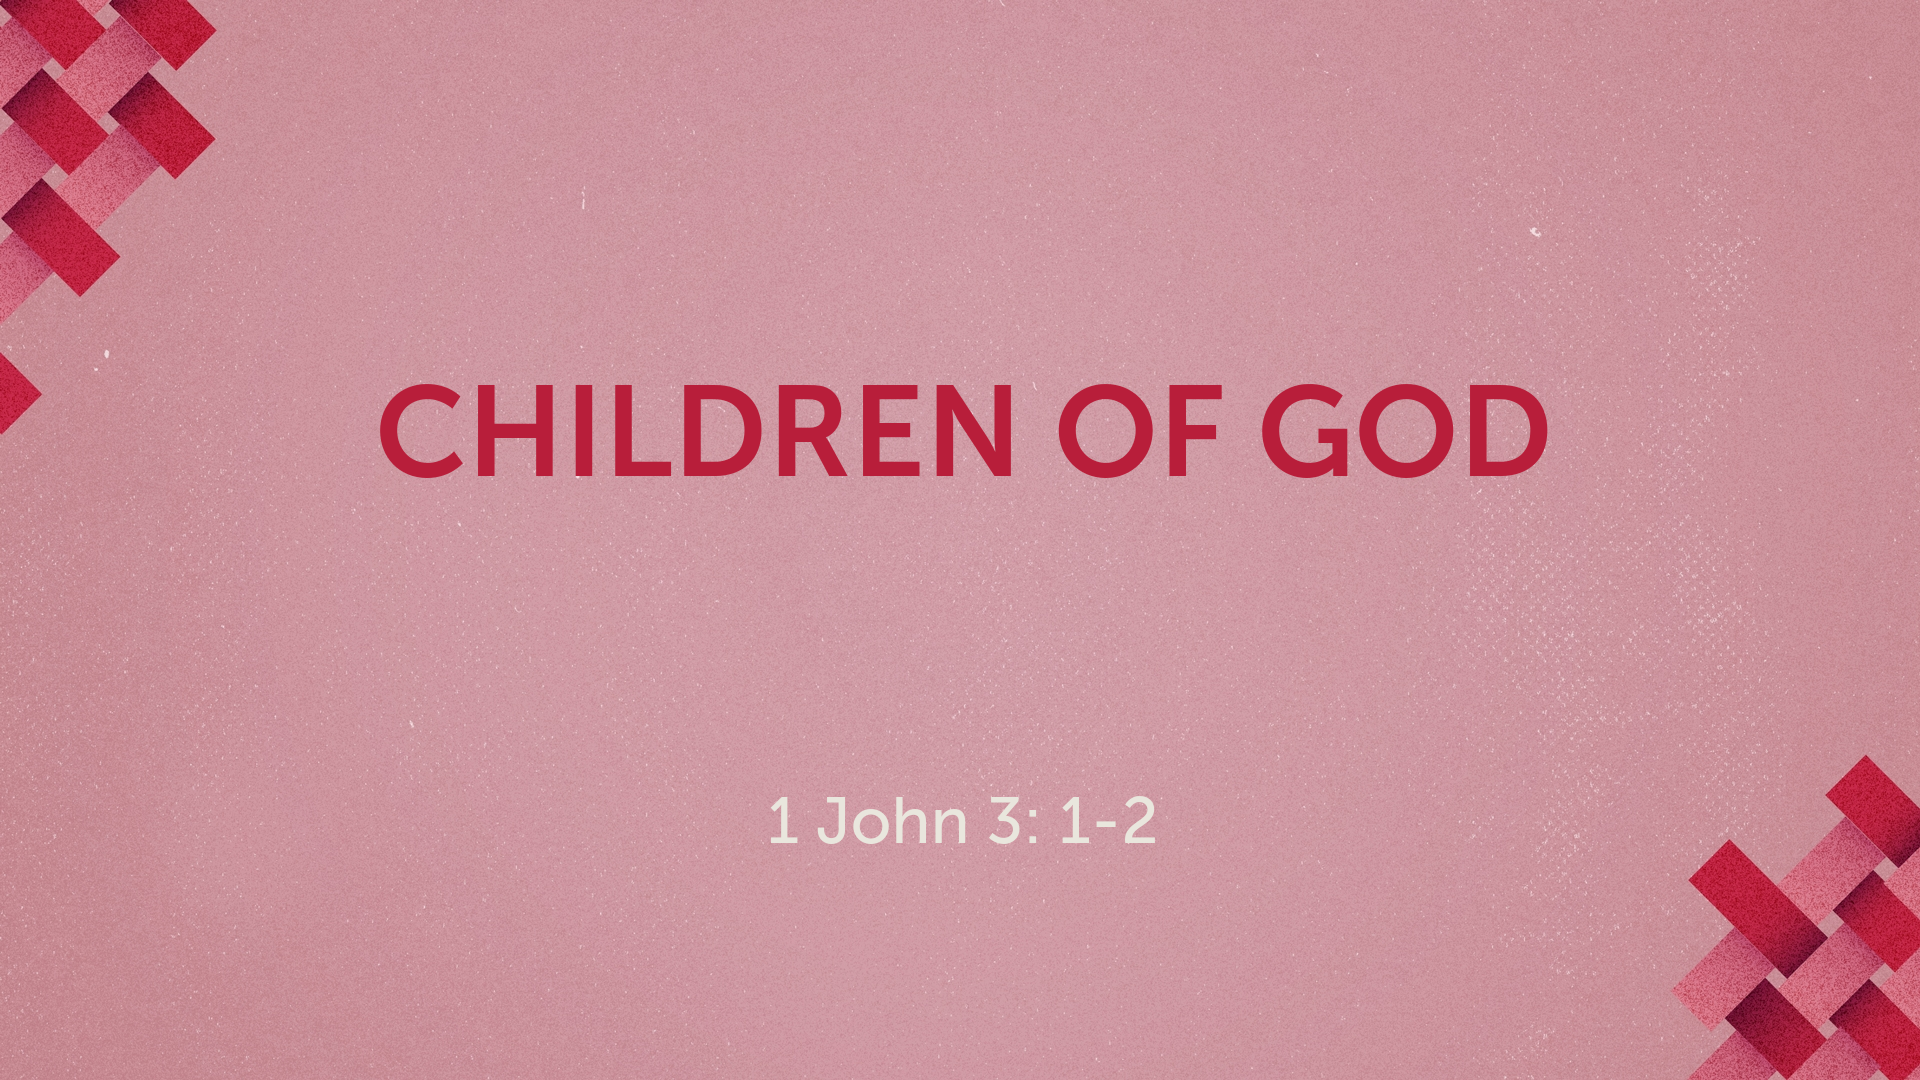 Jun 19, 2022 - Children of God (Video) 1 John 3: 1-2